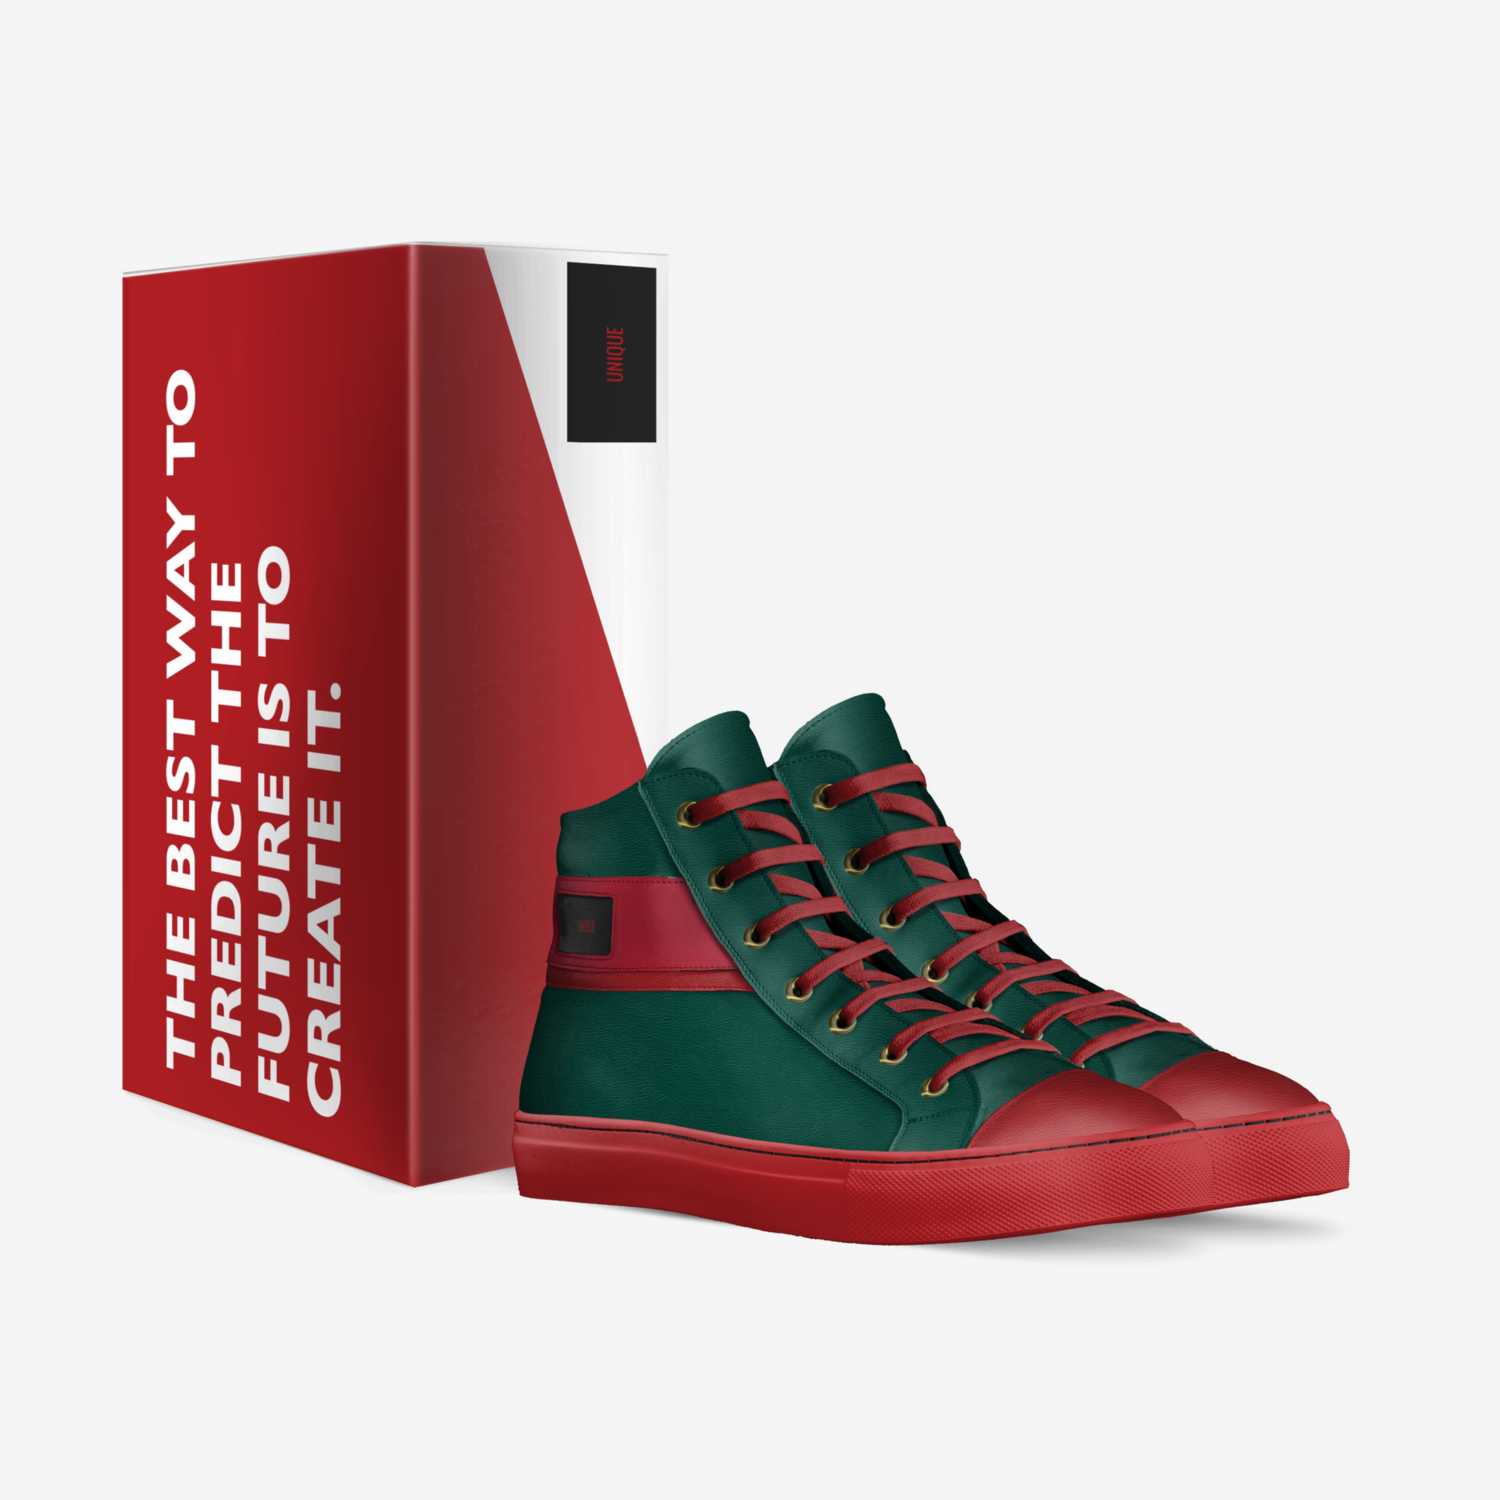 Sexy custom made in Italy shoes by Kanacha Gordon | Box view